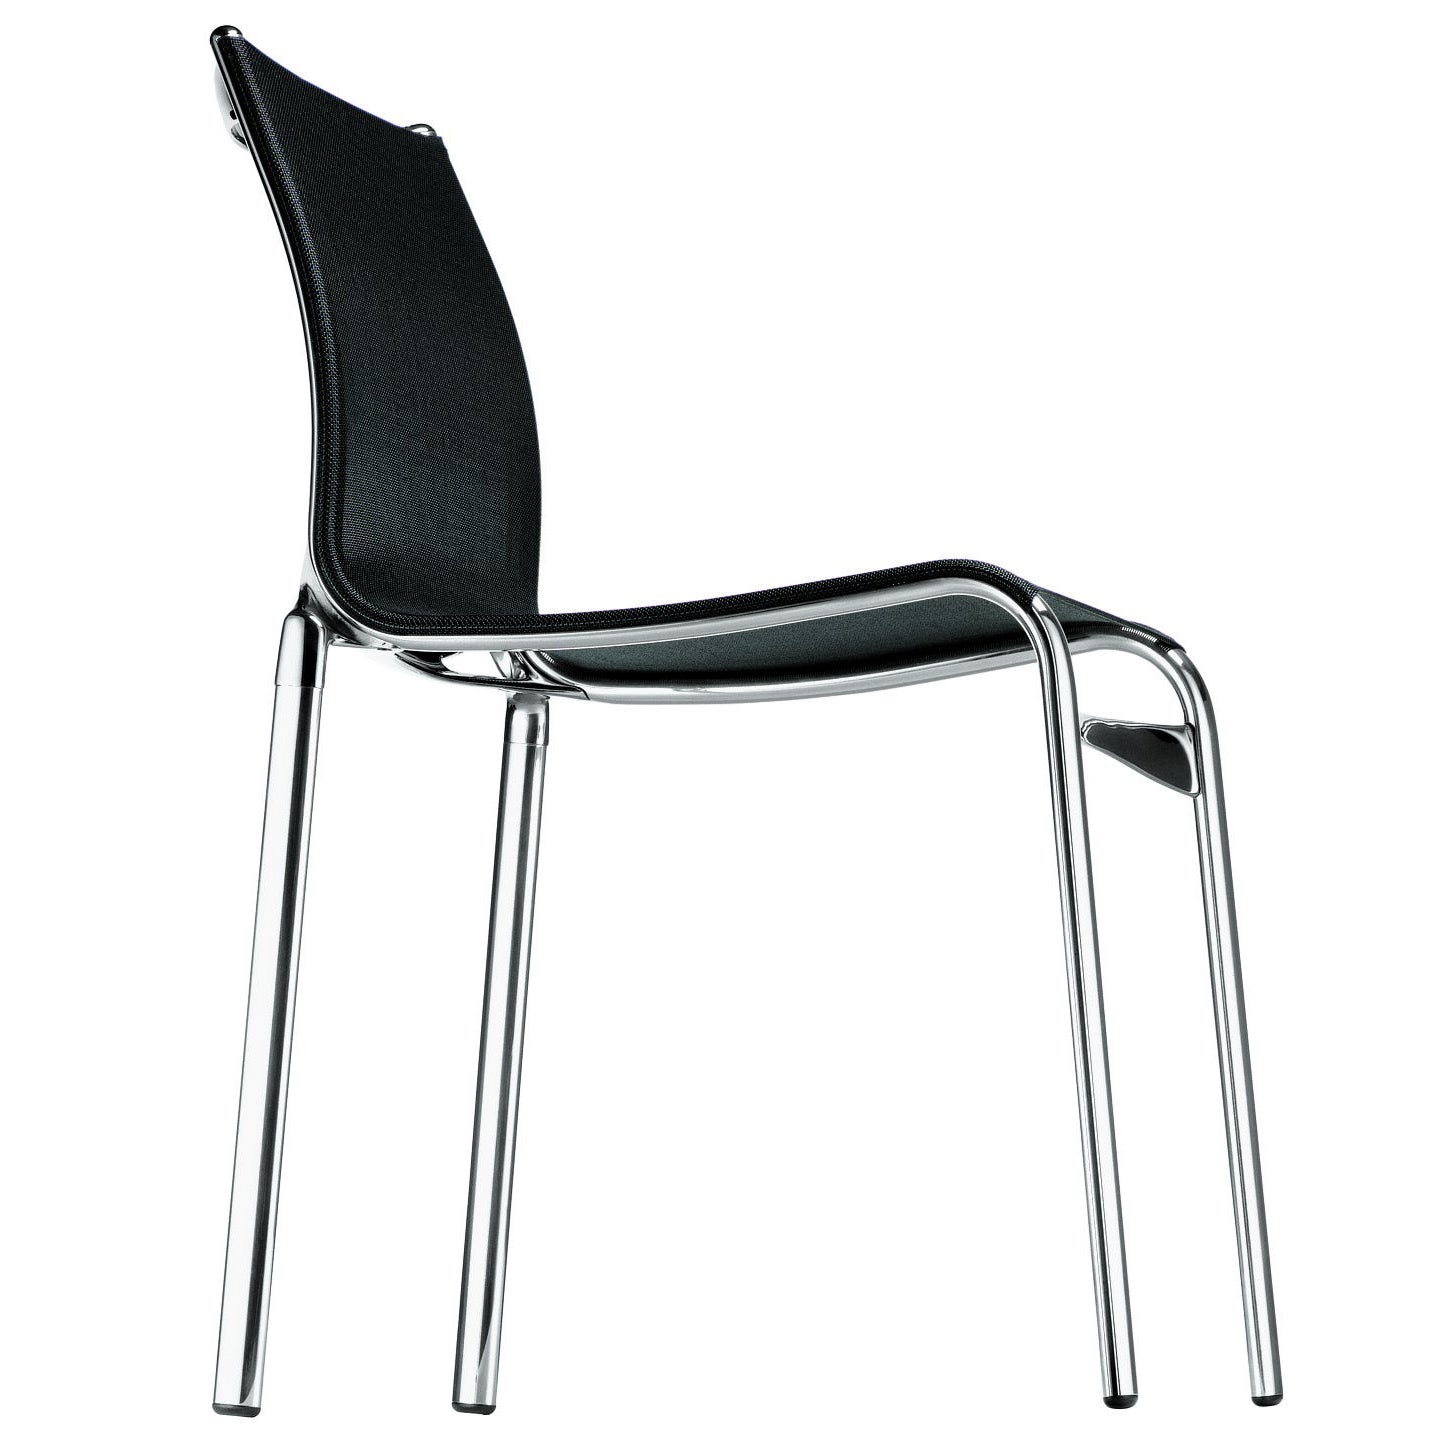 Alias Highframe 40 Stuhl mit schwarzem Mesh-Sitz und Sitz aus poliertem Aluminiumrahmen